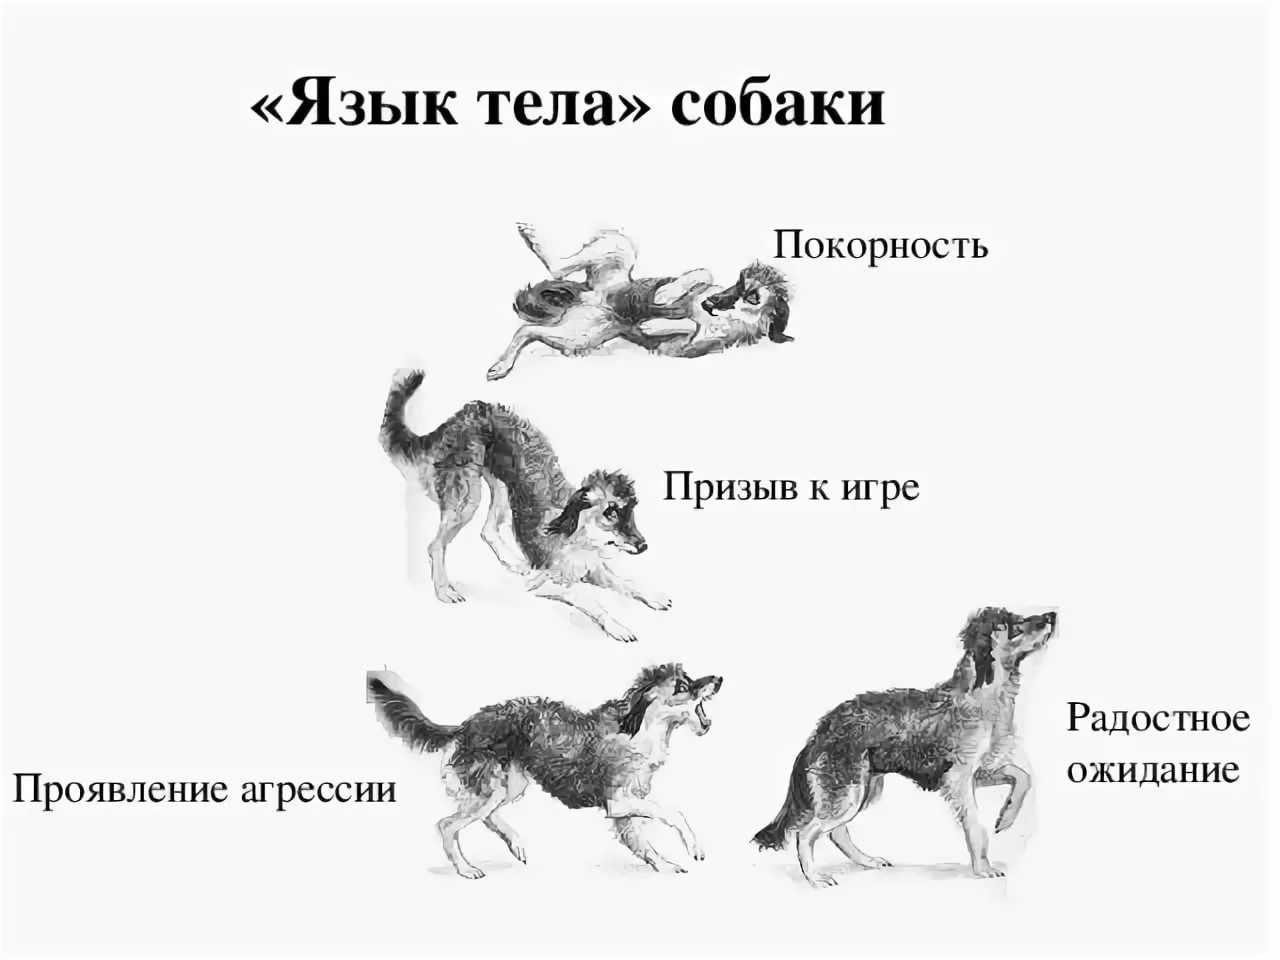 Почему скулят собаки причина. Поведение собак. Язык тела собаки в картинках. Араедение собак. Виды поведения собак.